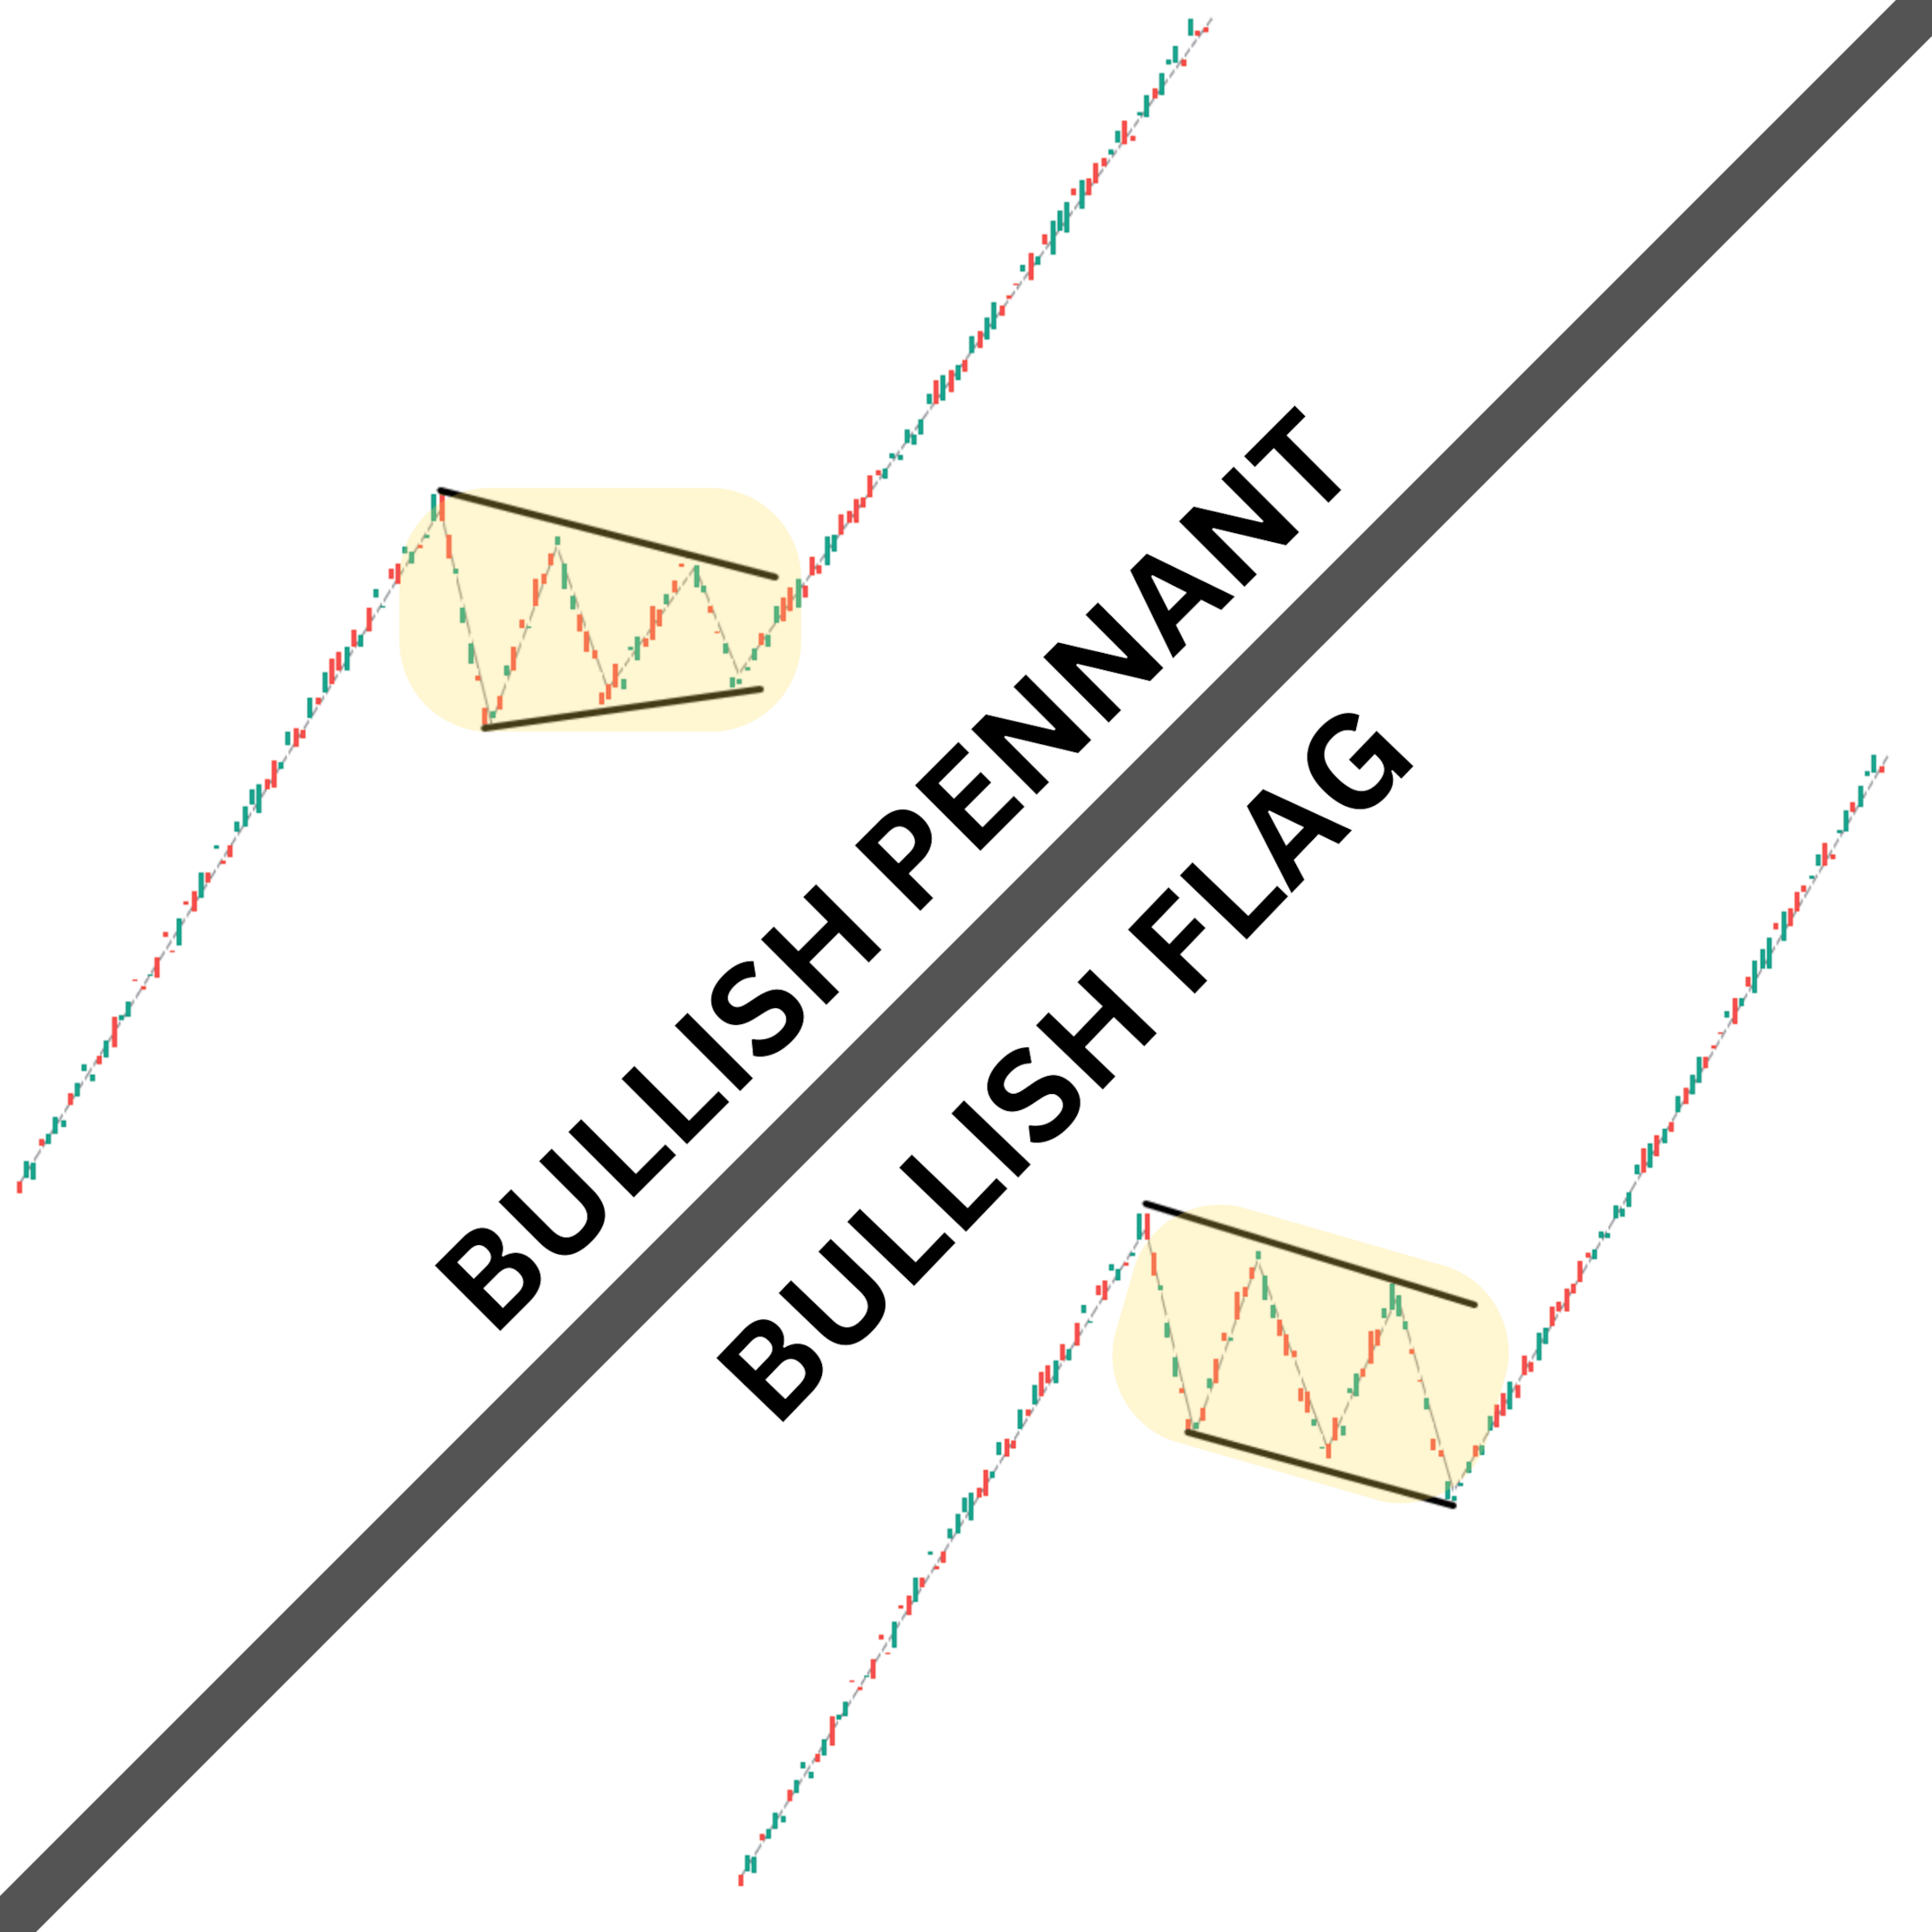 Bullish pennant vs bullish flag